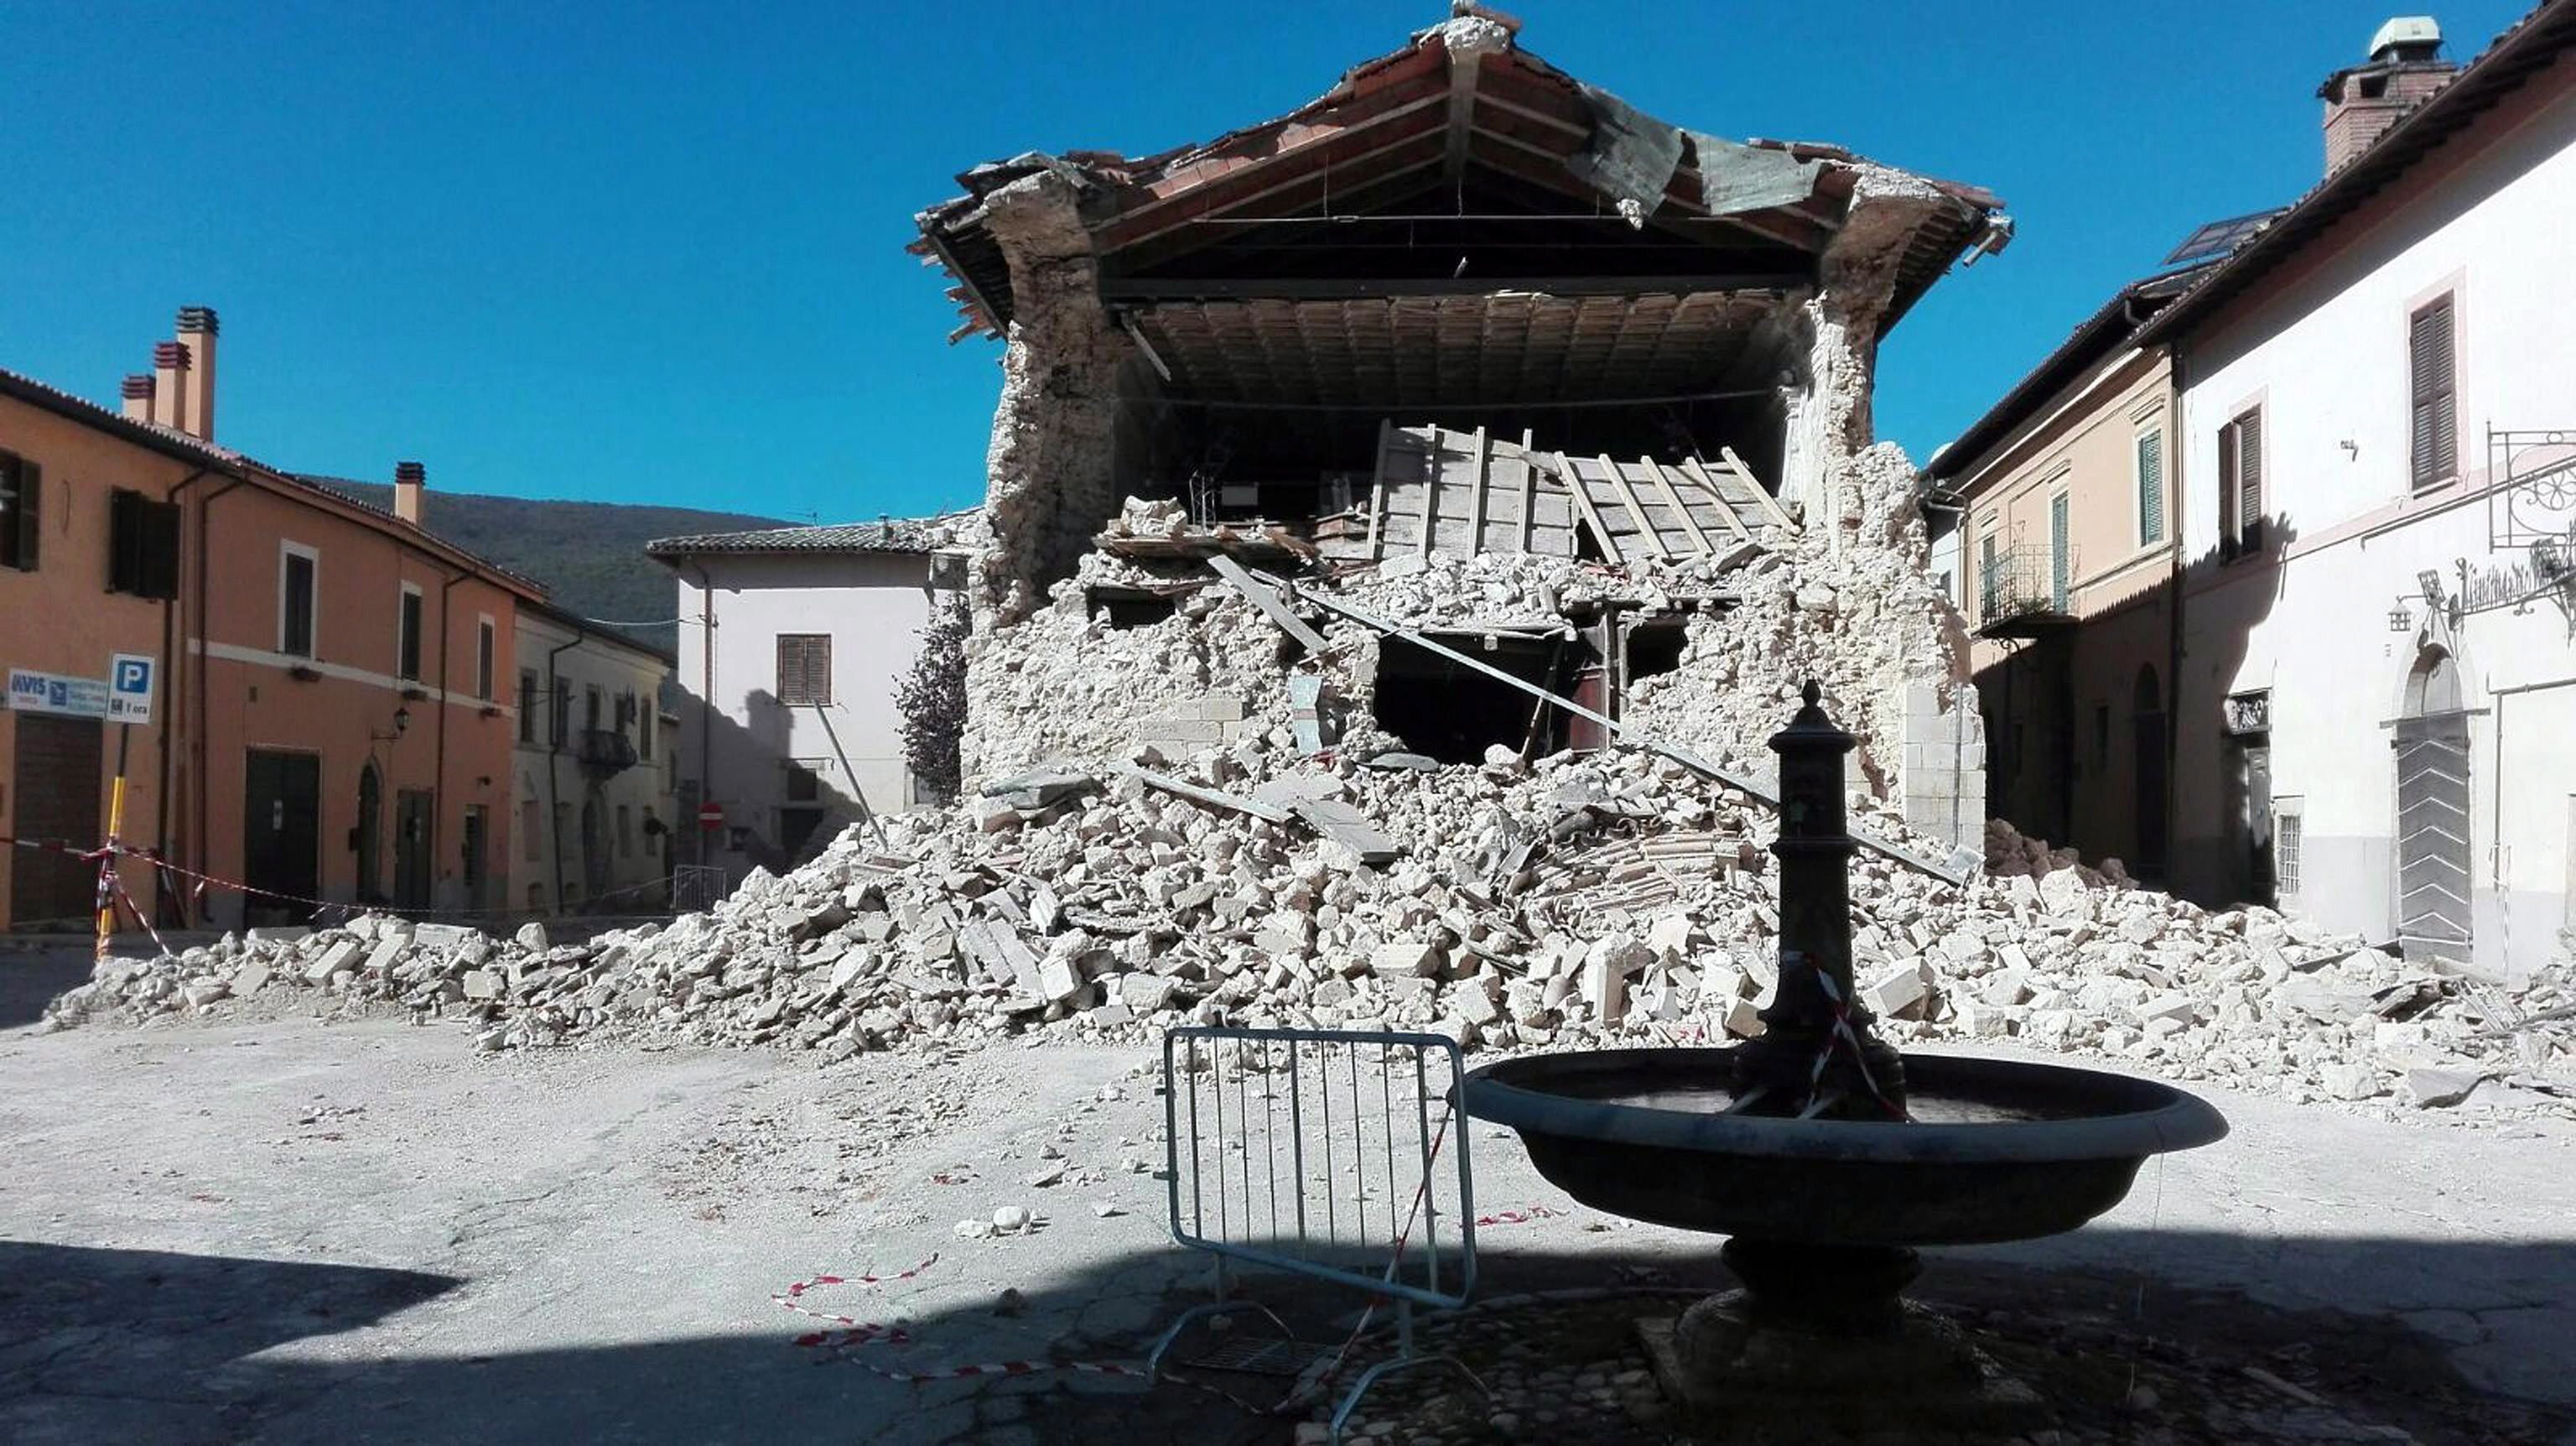 Norcia, 2016. október 30. Romba dõlt a Szent Ferenc-templom a közép-olaszországi Norciában 2016. október 30-án, miután a reggeli órákban Richter skála szerinti 6,5-ös erõsségû földrengés rázta meg a térséget. A földmozgás miatt, amelynek epicentruma Norcia és a tõle 20 kilométerre, északra fekvõ Preci között 10 kilométeres mélységben volt, súlyos károk keletkeztek és többtucatnyian megsérültek. Október 26-án három nagy erejû földrengés pusztított Olaszország középsõ régiójában. (MTI/EPA/Matteo Guidelli)